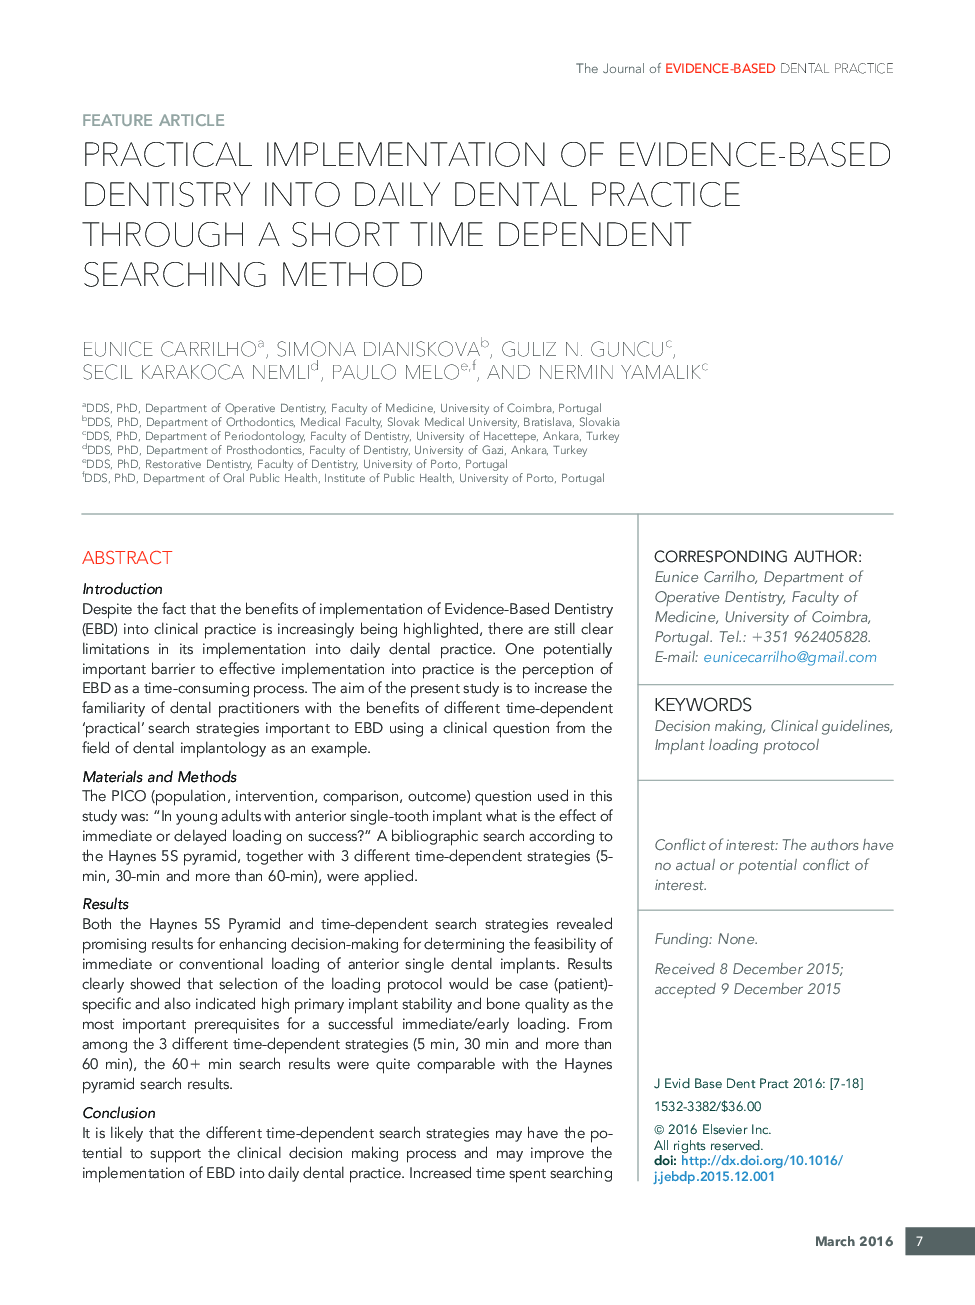 پیاده سازی عملی از دندانپزشکی مبتنی بر شواهد در روزنامه دندانپزشکی با استفاده از روش جستجوی کوتاه مدت وابسته 